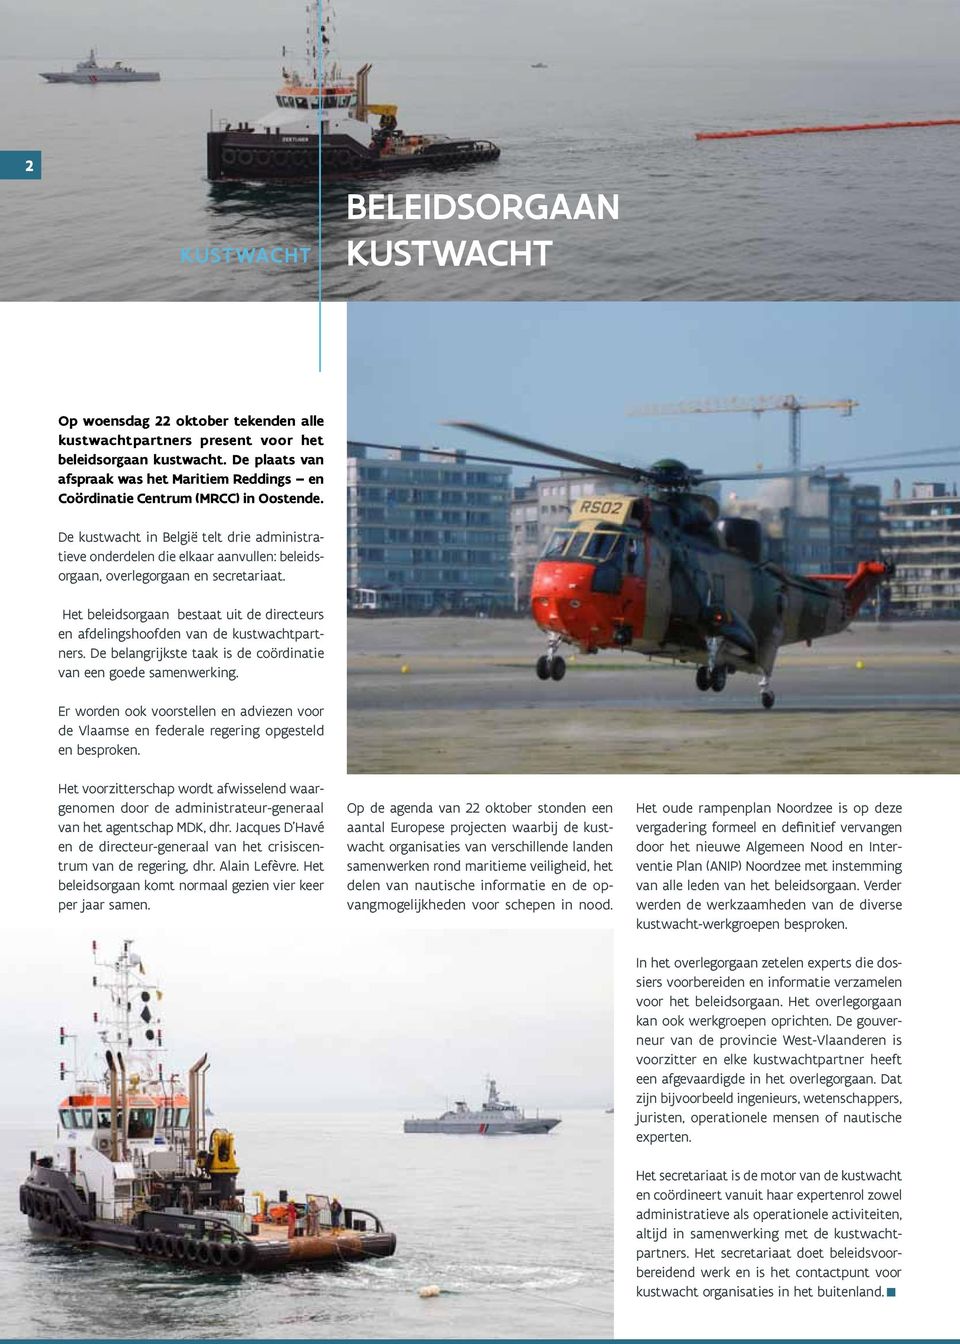 De kustwacht in België telt drie administratieve onderdelen die elkaar aanvullen: beleidsorgaan, overlegorgaan en secretariaat.